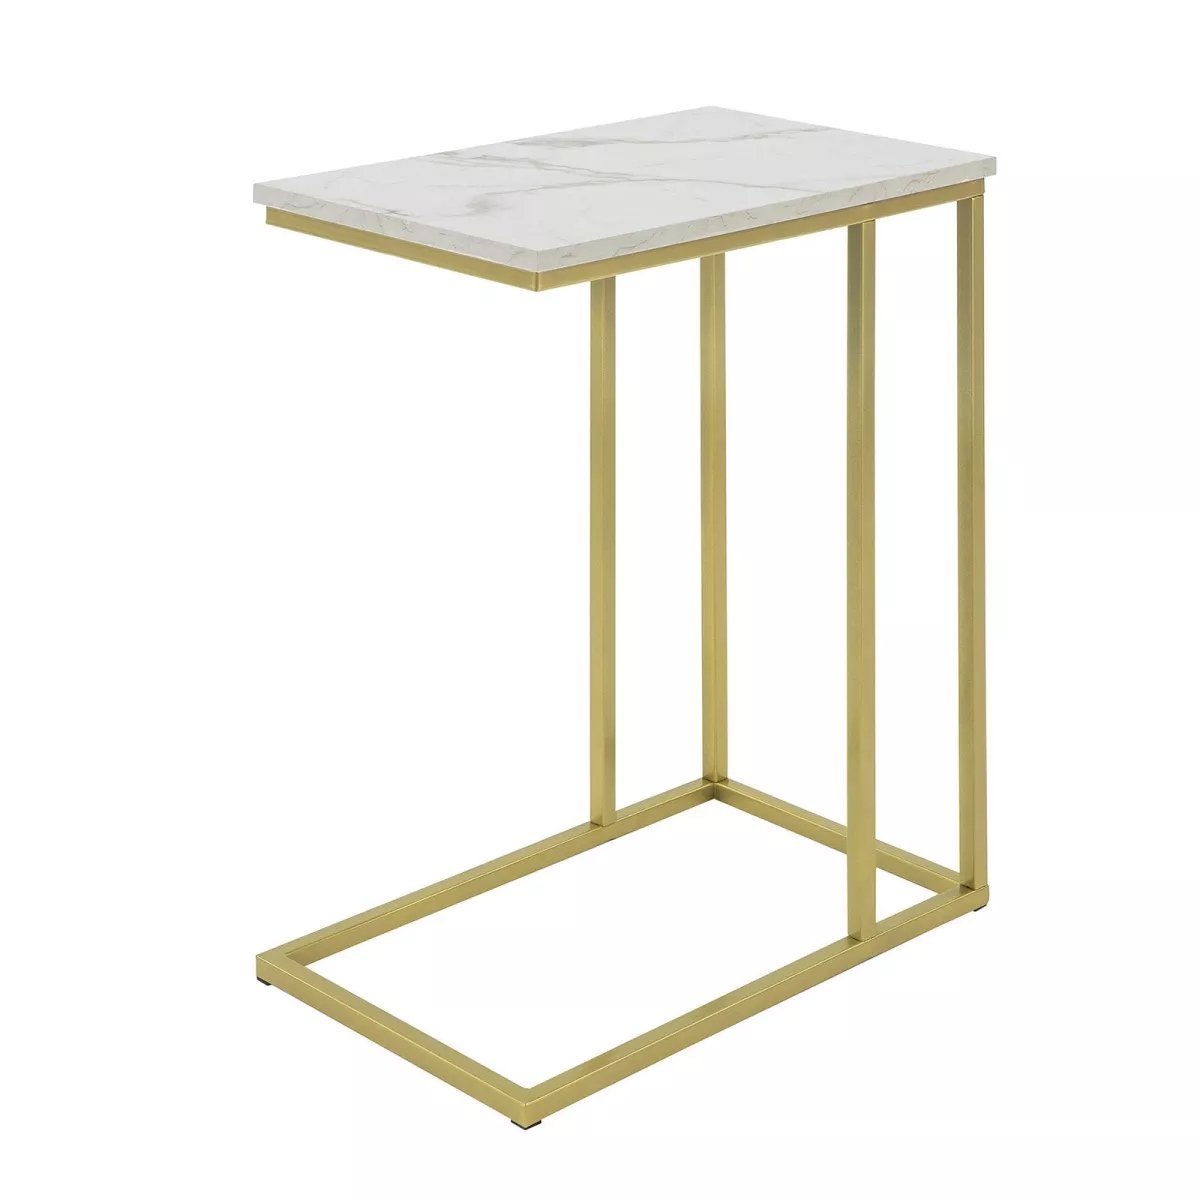 #1 - Sofabord i glam-stilen, bordplade med marmor-effekt og guldfarvede ben